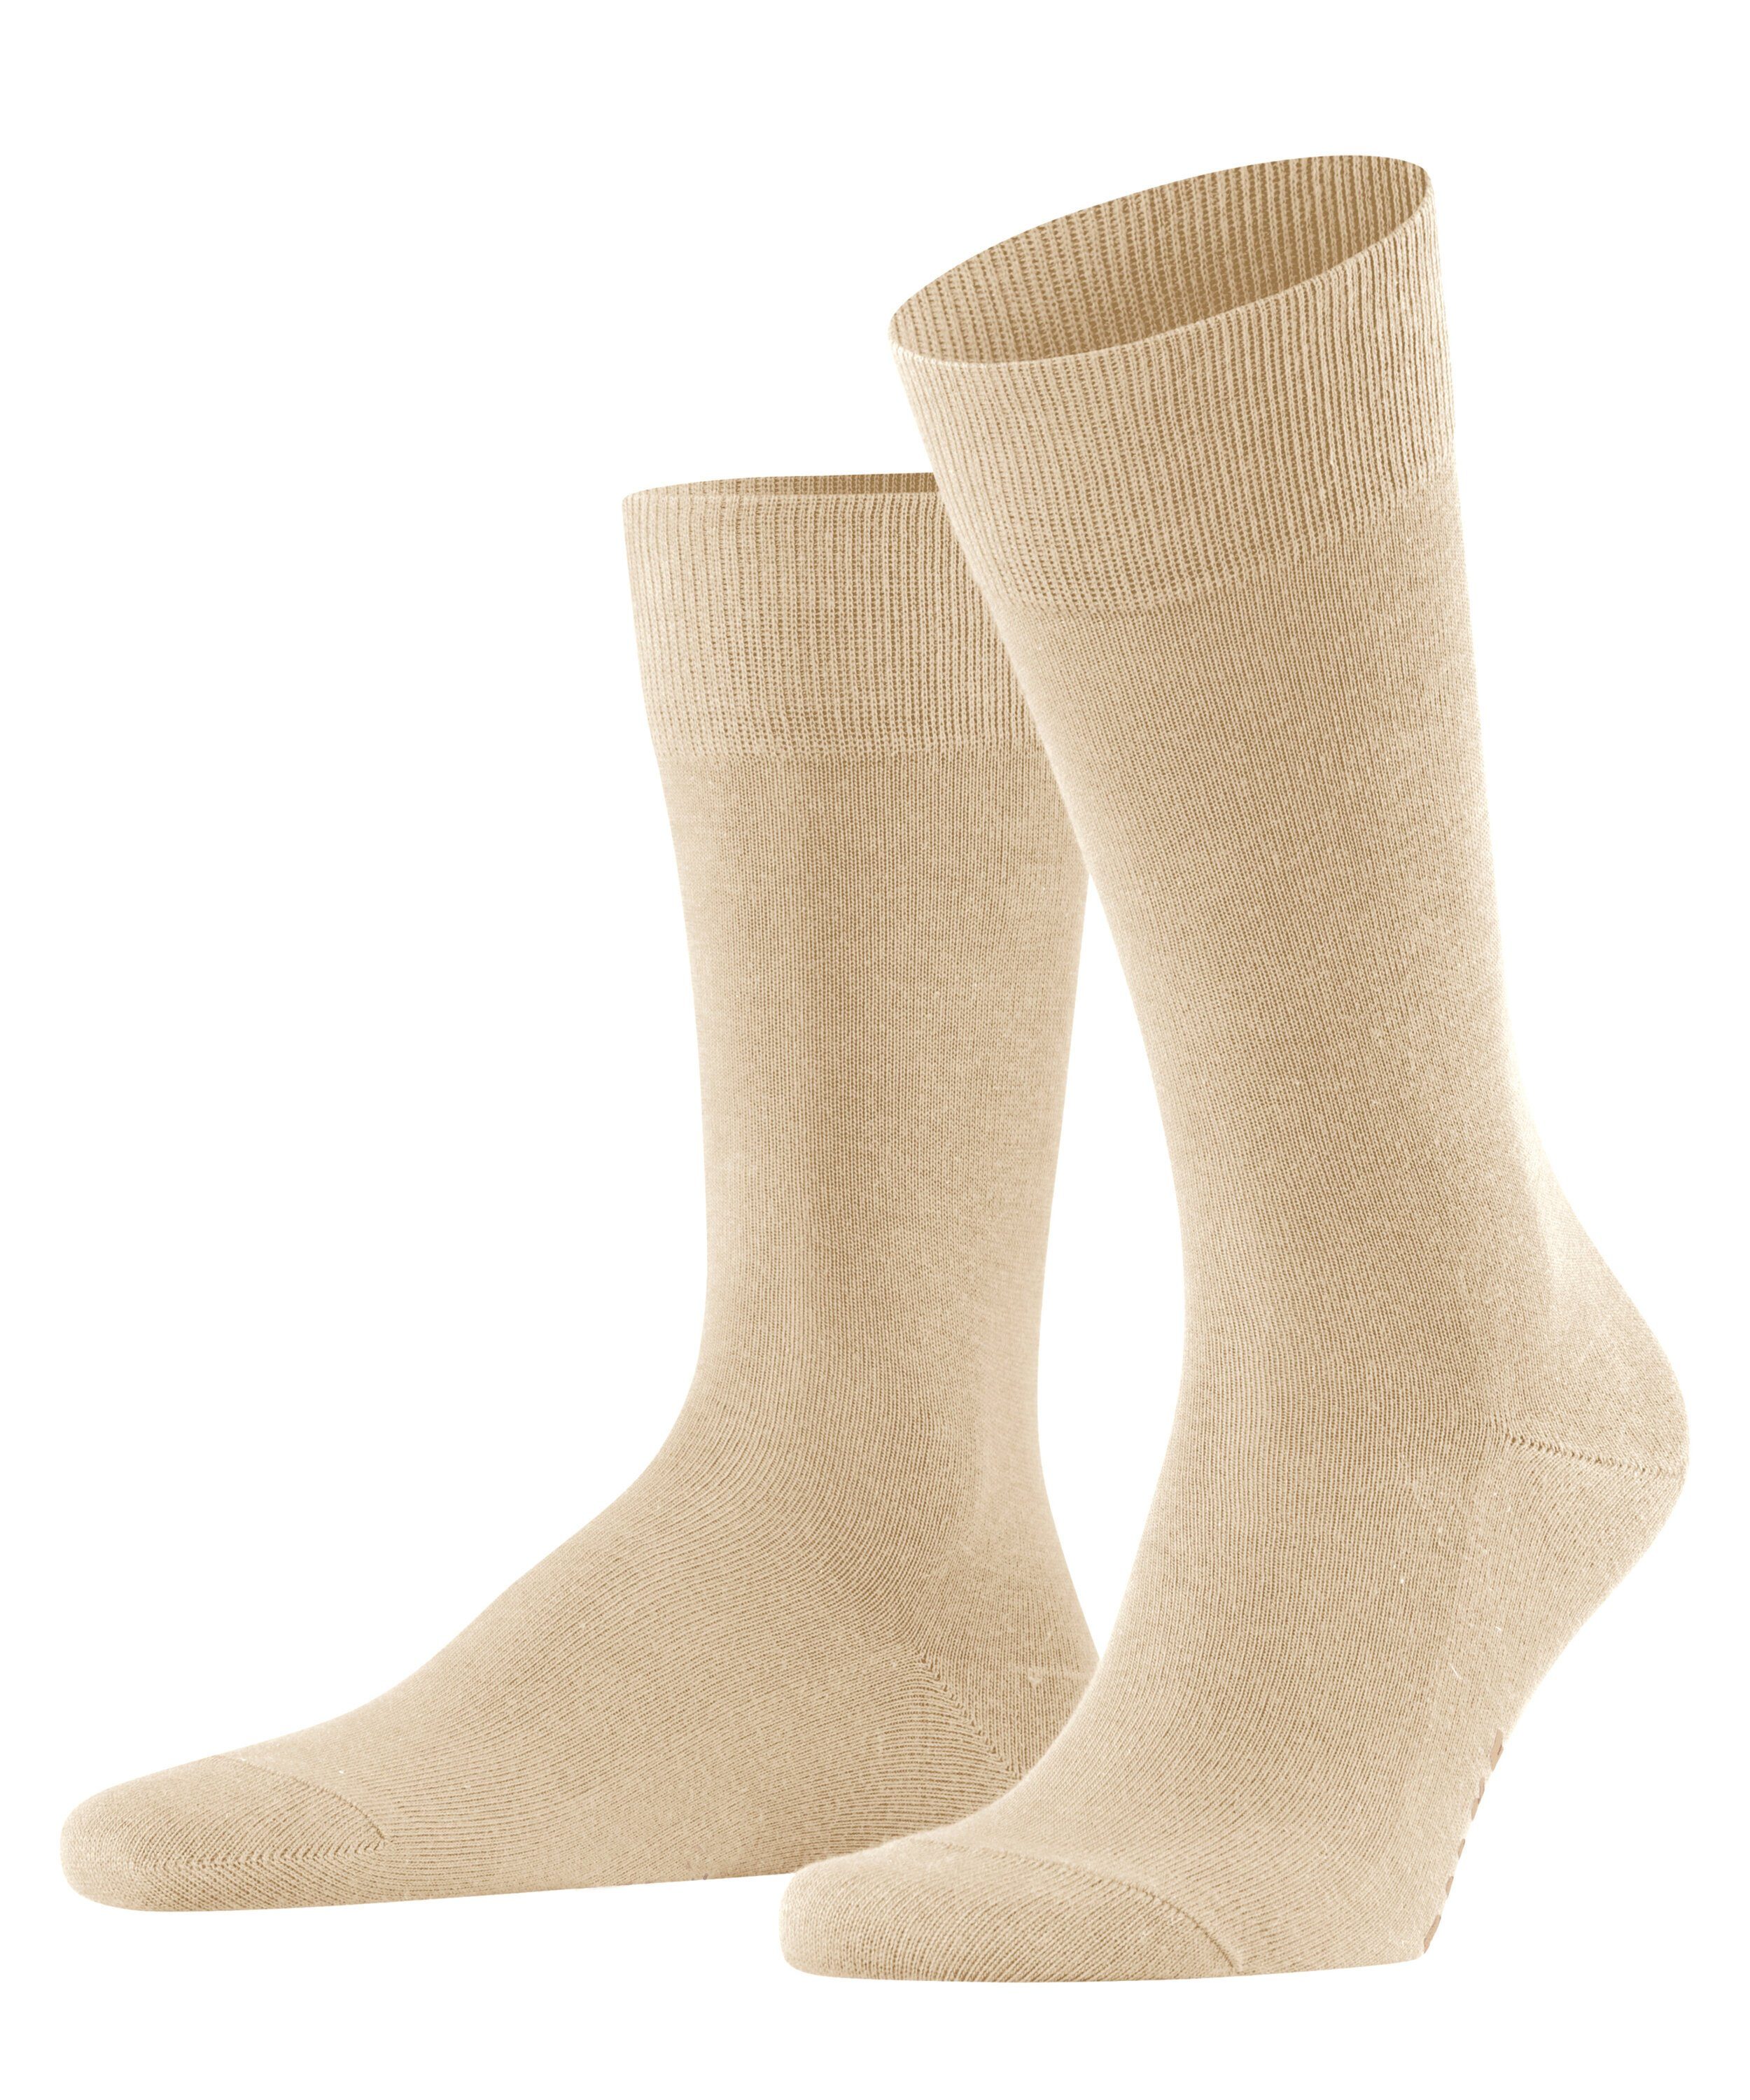 Family (1-Paar) FALKE Socken sand (4320)